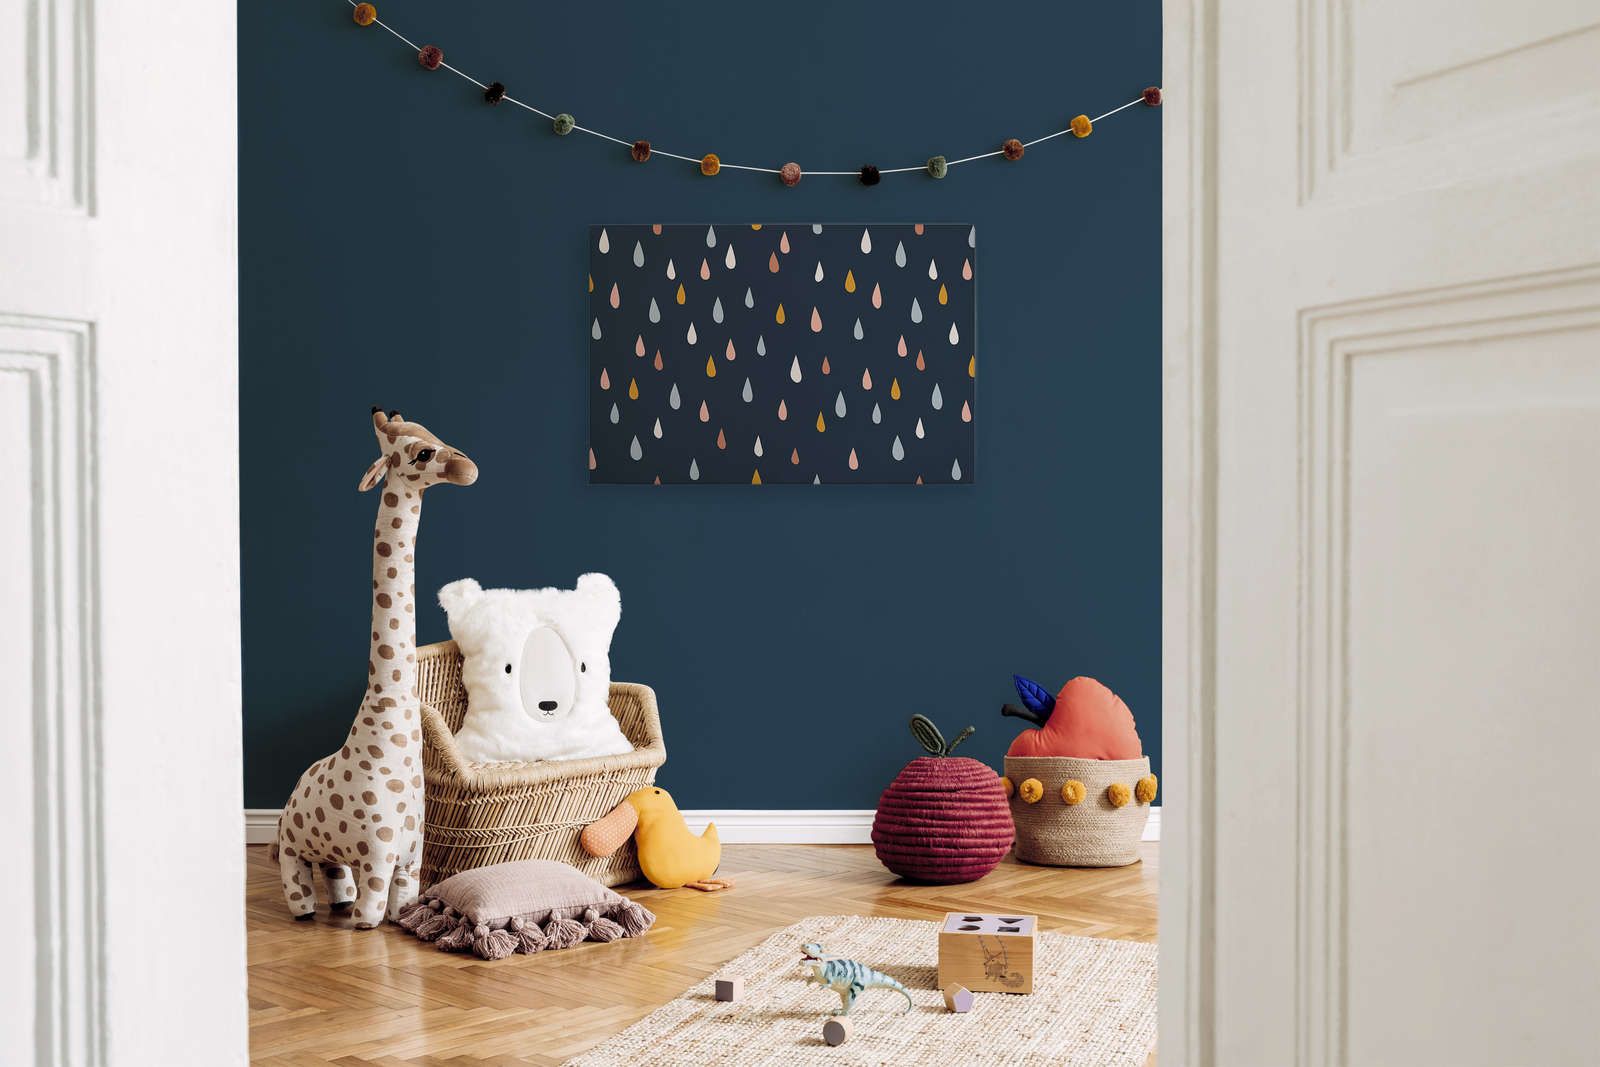             Lienzo para habitación infantil con gotas de colores - 90 cm x 60 cm
        